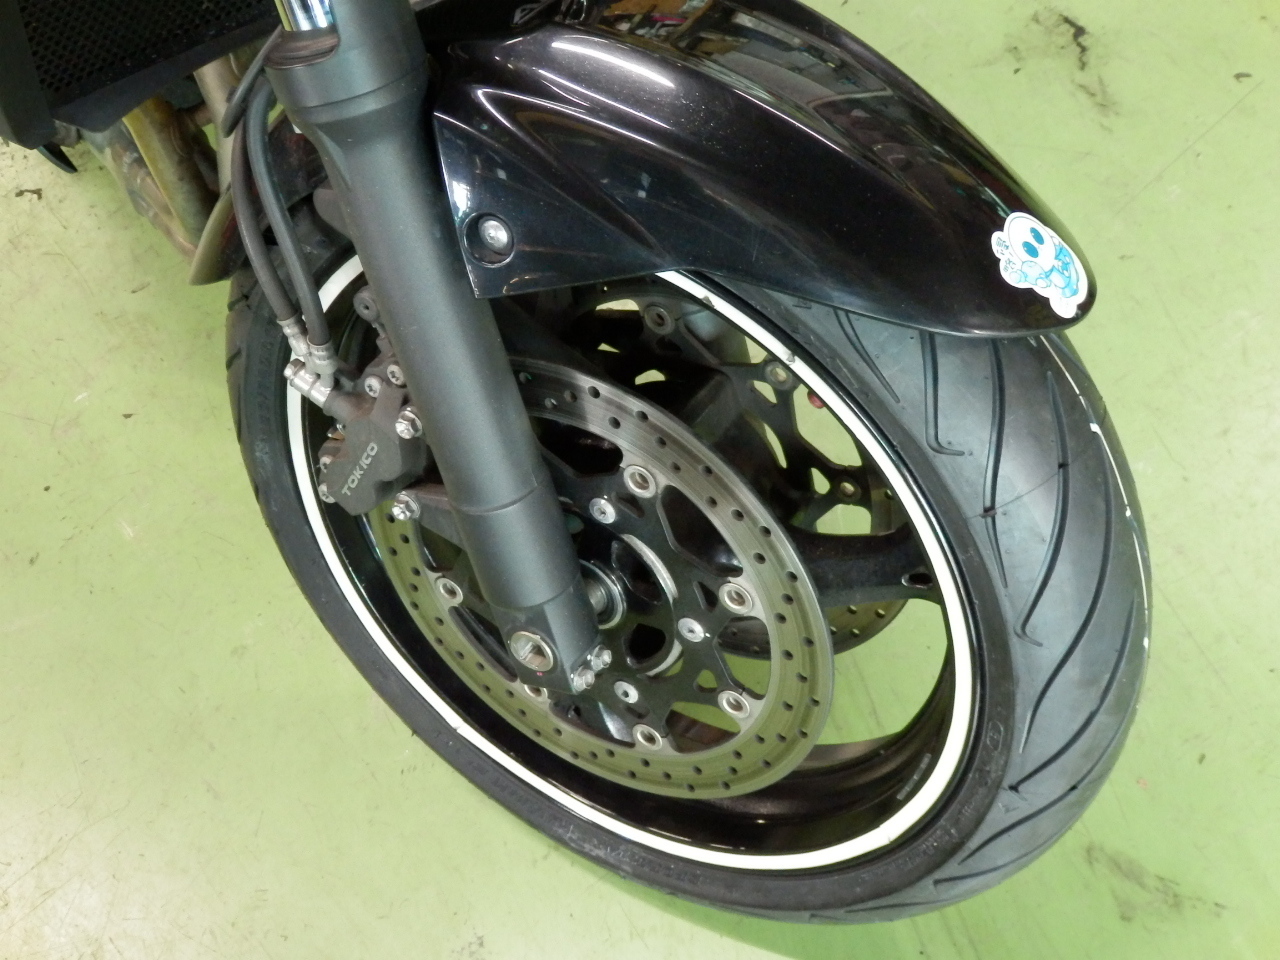 スズキ Gsr400 タイヤ交換 ダンロップ スポーツマックス ロードスマート2 バイク用品店ナップス 練馬店ブログ